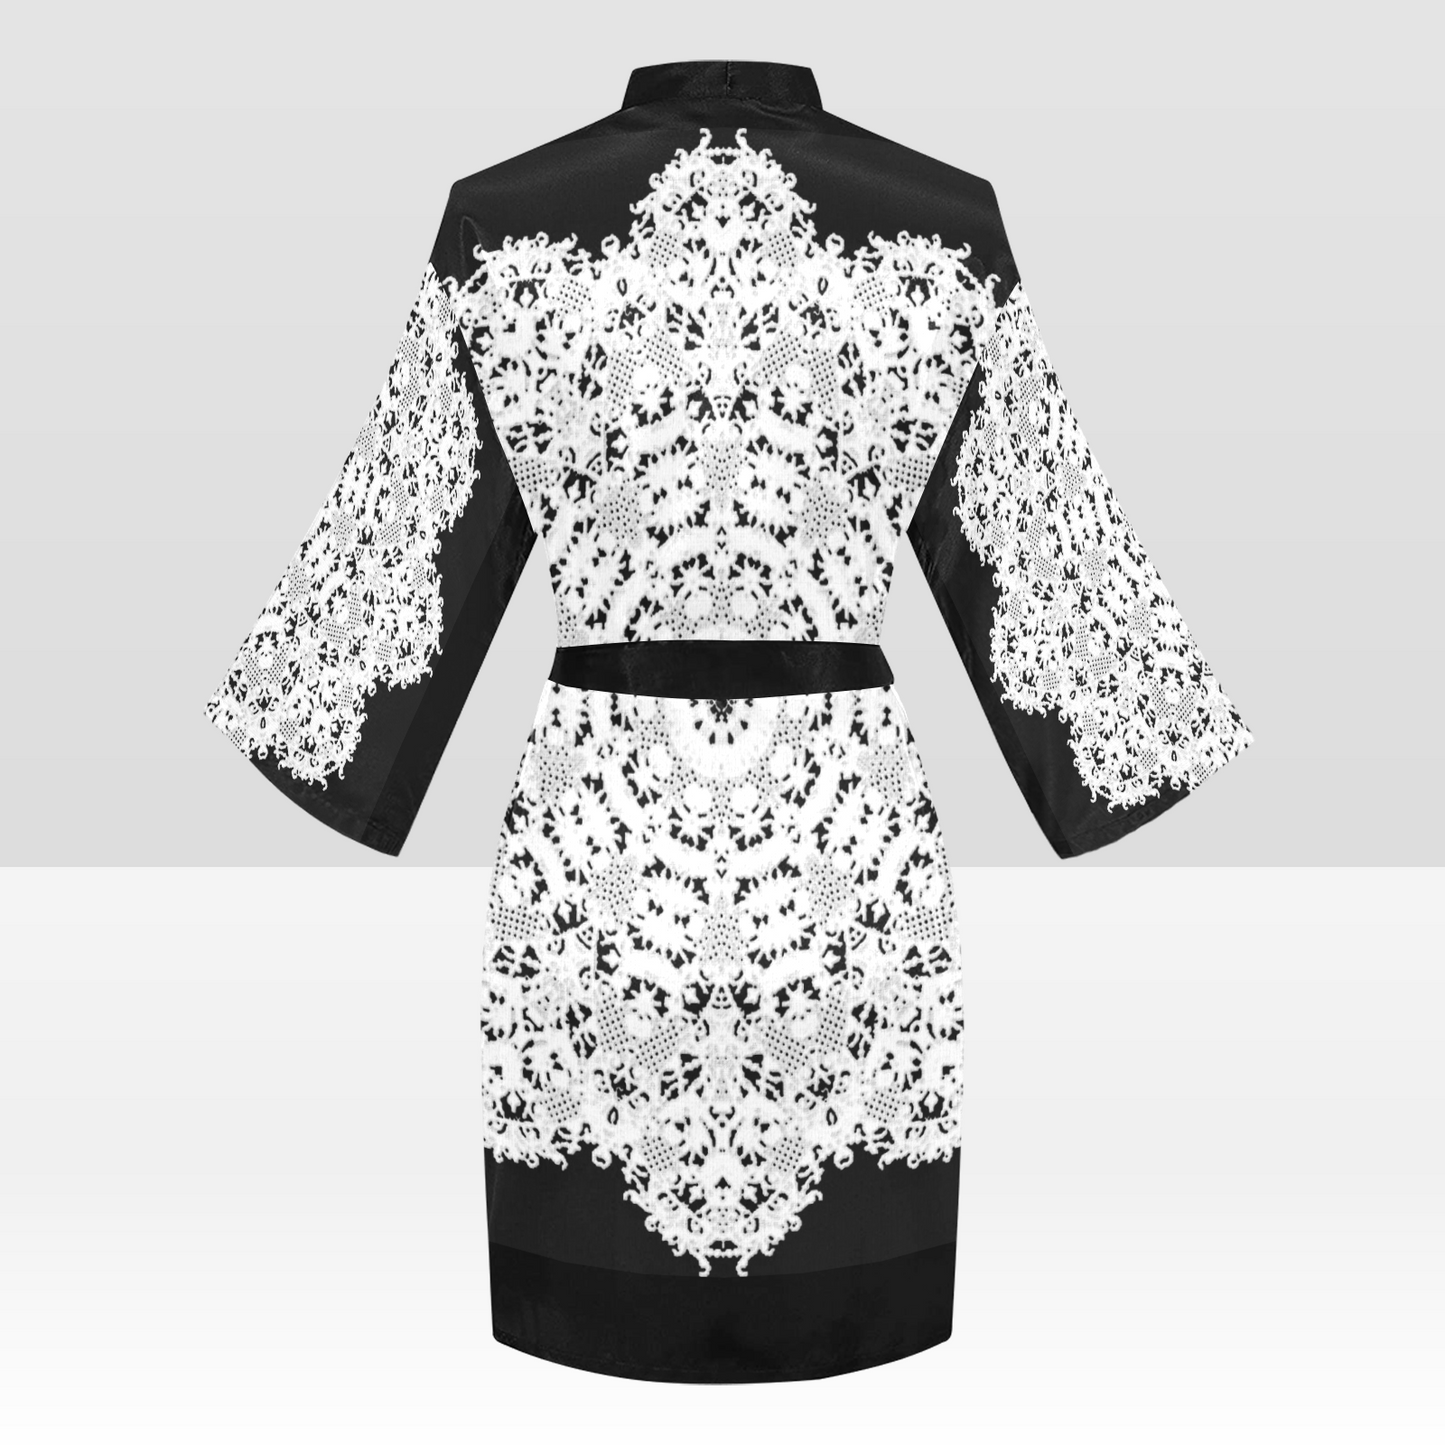 Victorian Lace Kimono Robe, Black or White Trim, Sizes XS to 2XL, Design 50